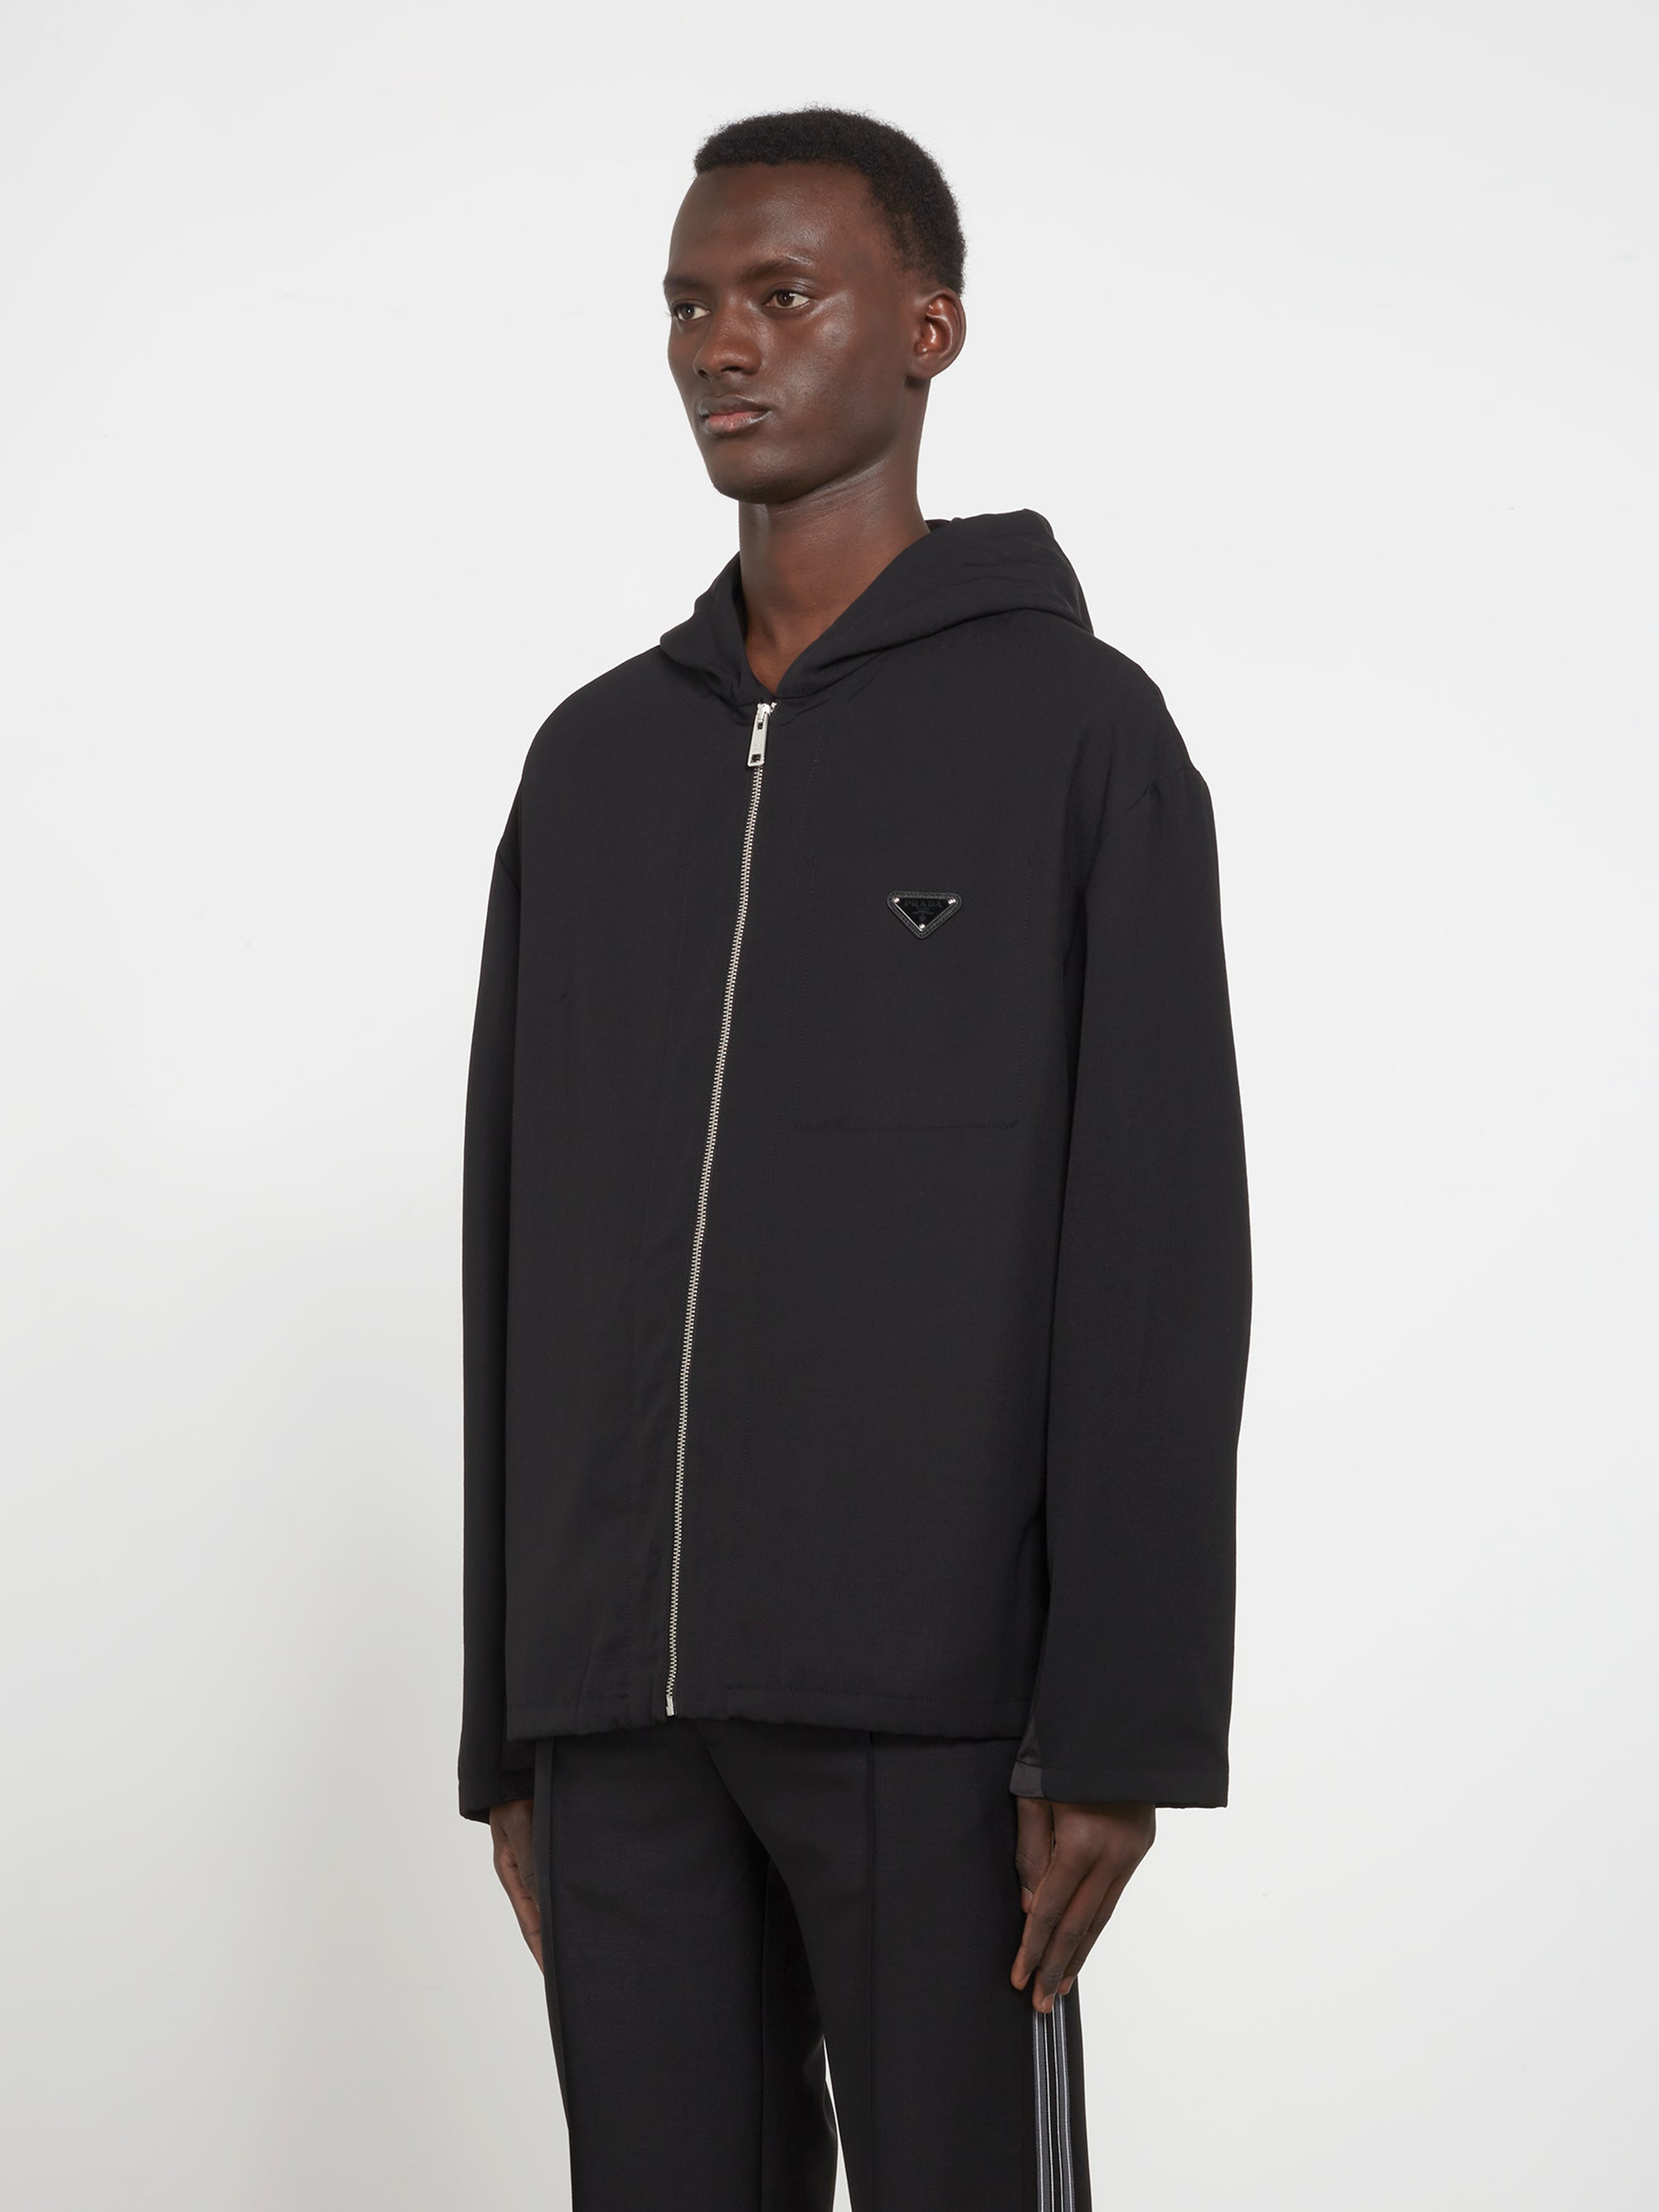 Prada - Men’s Hooded Wool Jacket - (Black) view 3